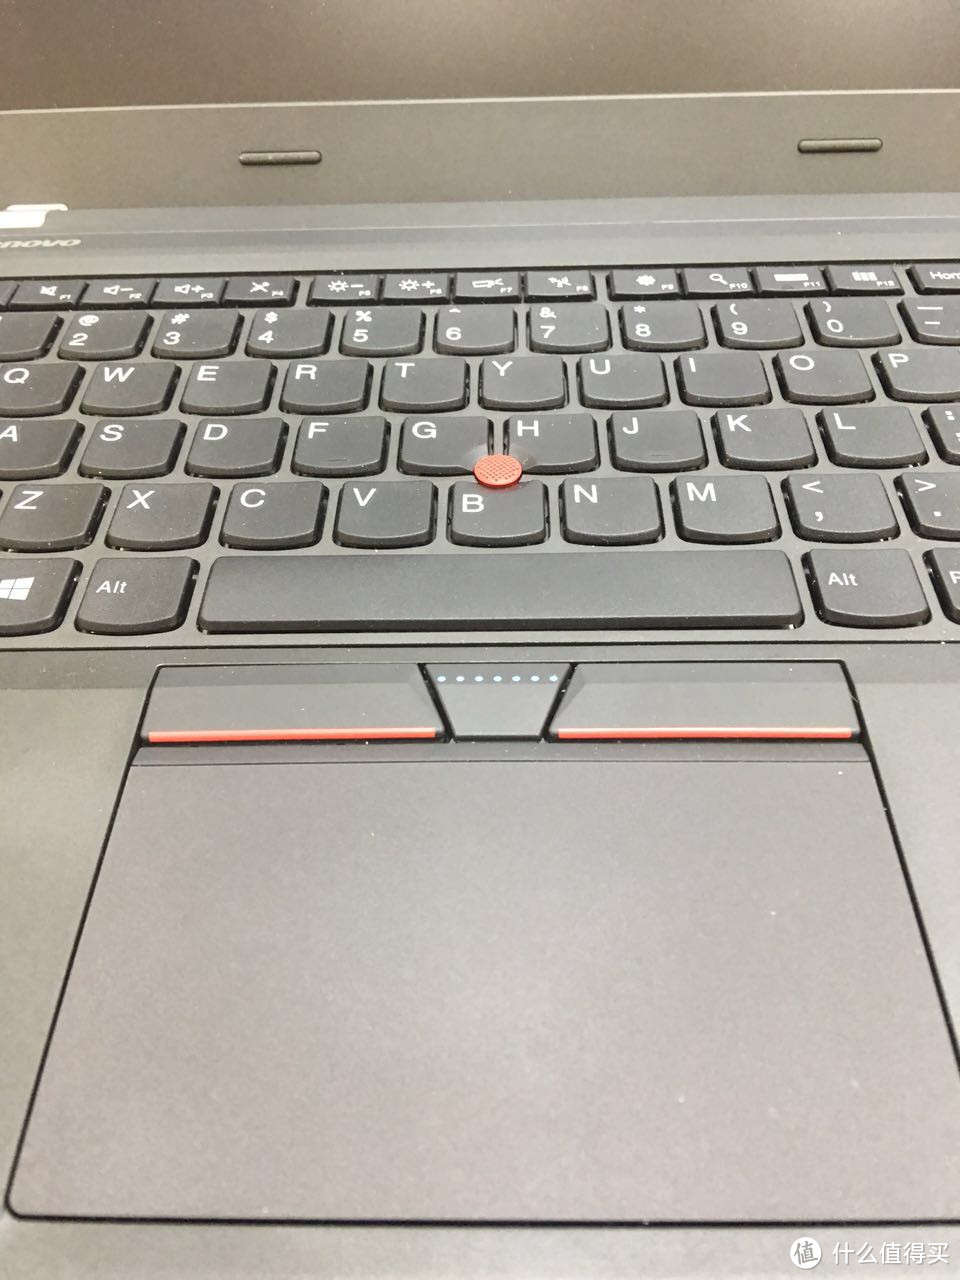 #情人节送心动#   男人要送电子科技产品——lenovo 联想 ThinkPad E465 笔记本电脑